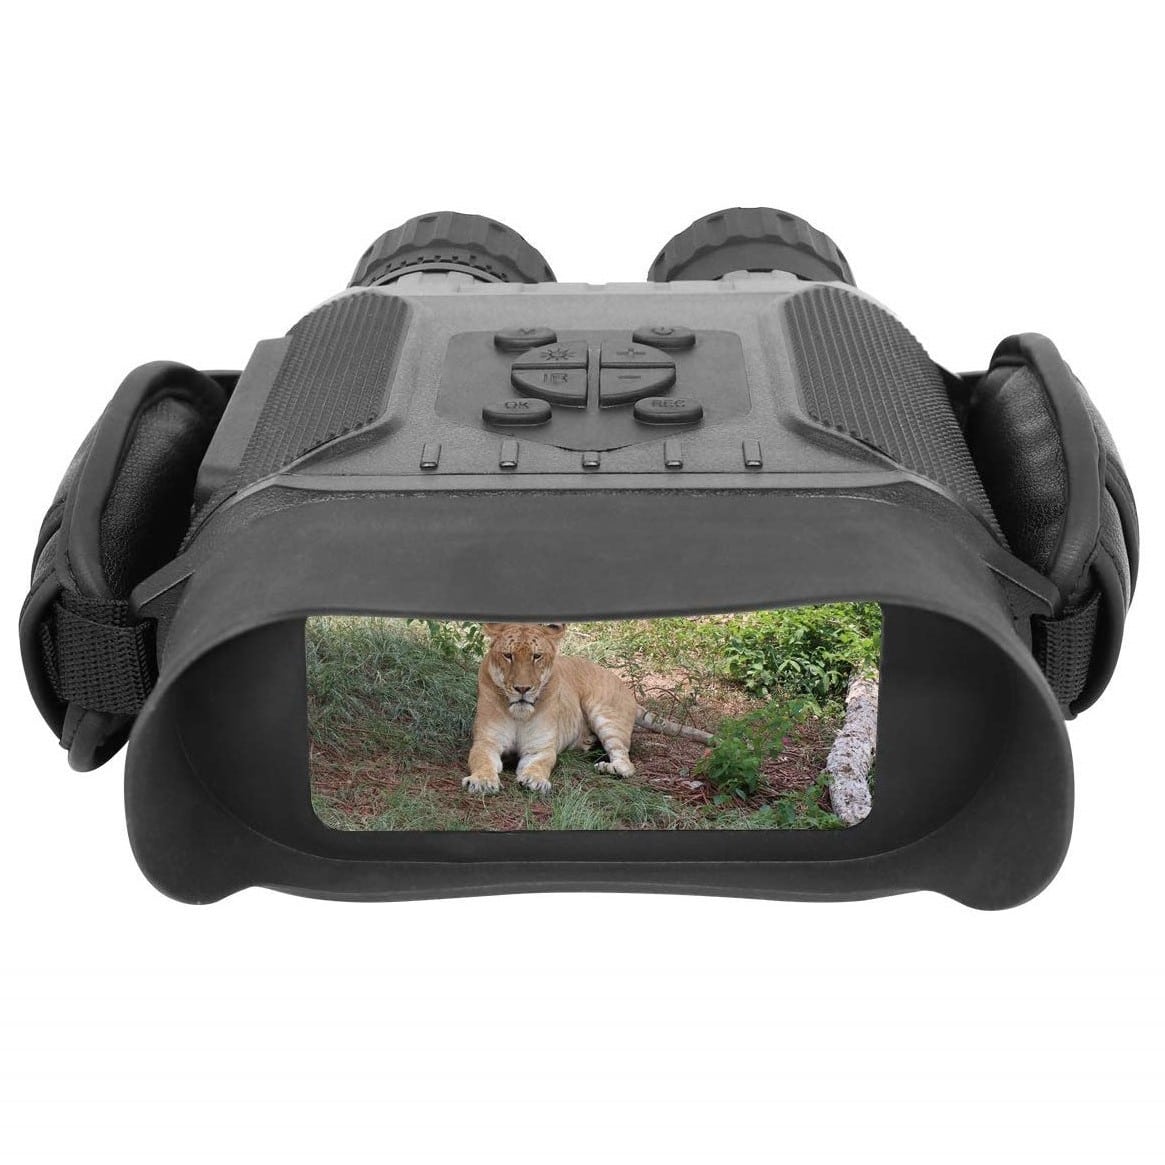 Bestguarder NV-900 Night Vision Binoculars